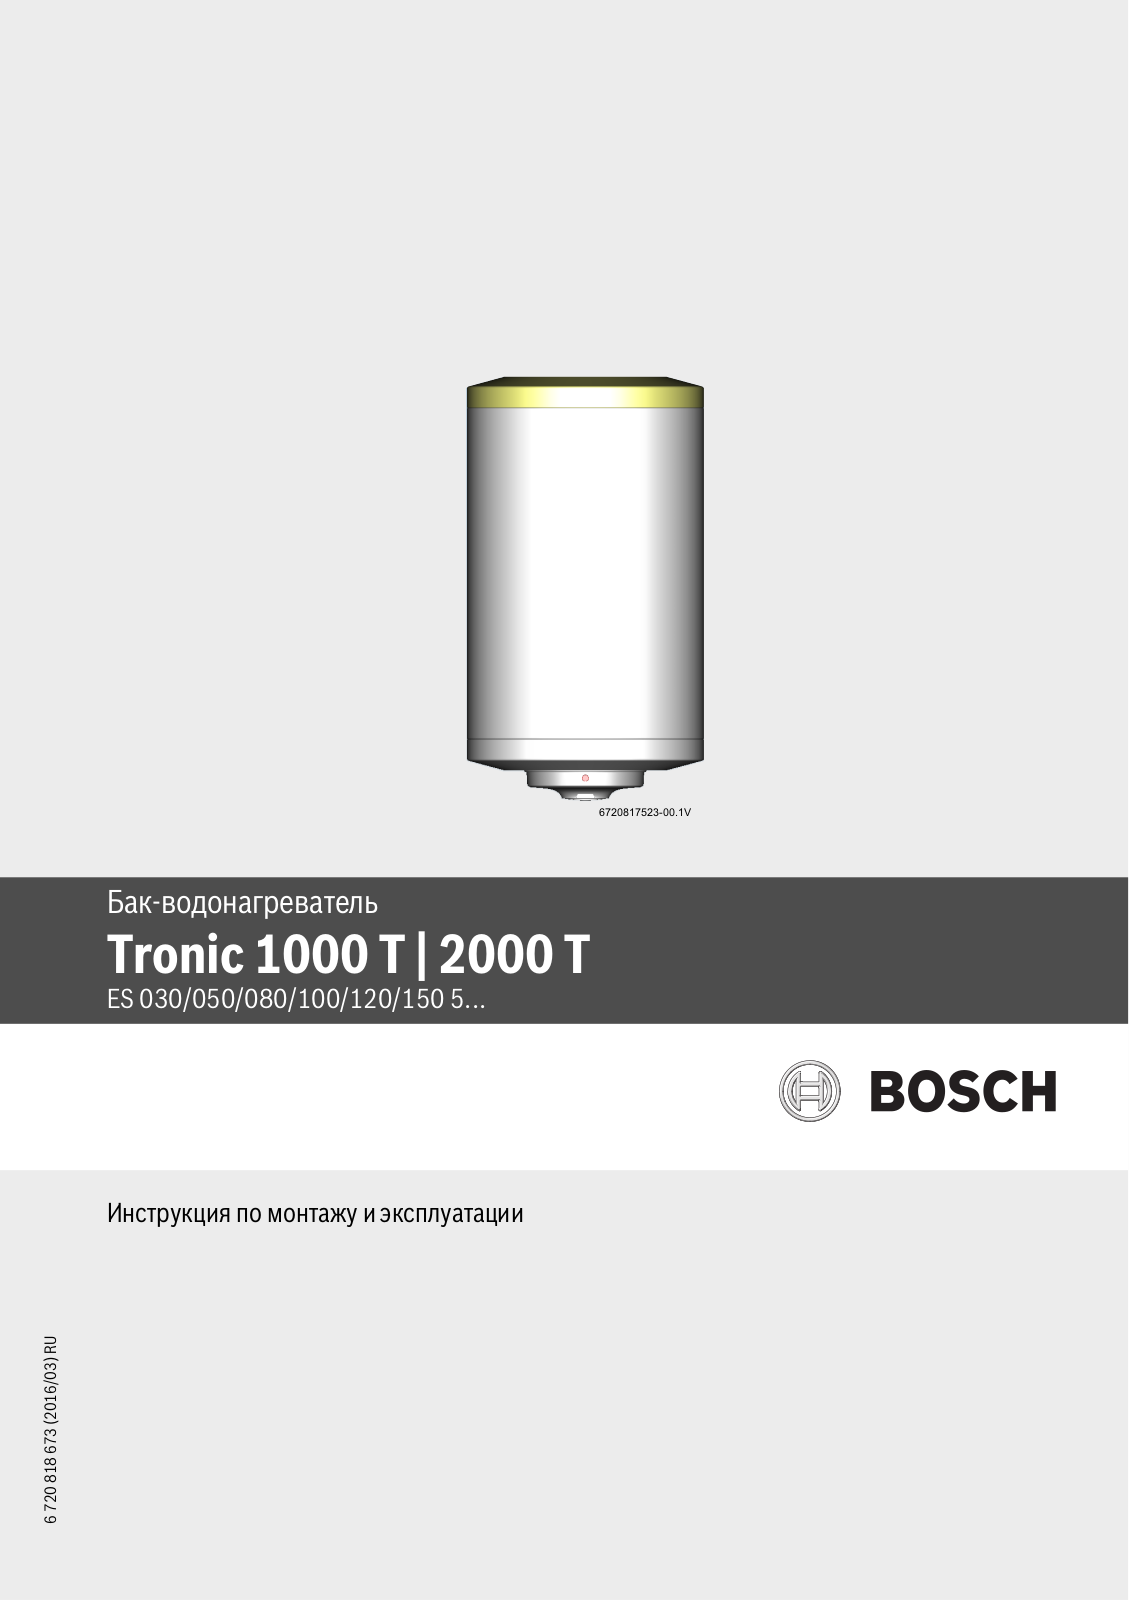 Bosch ES 030-5 User Manual